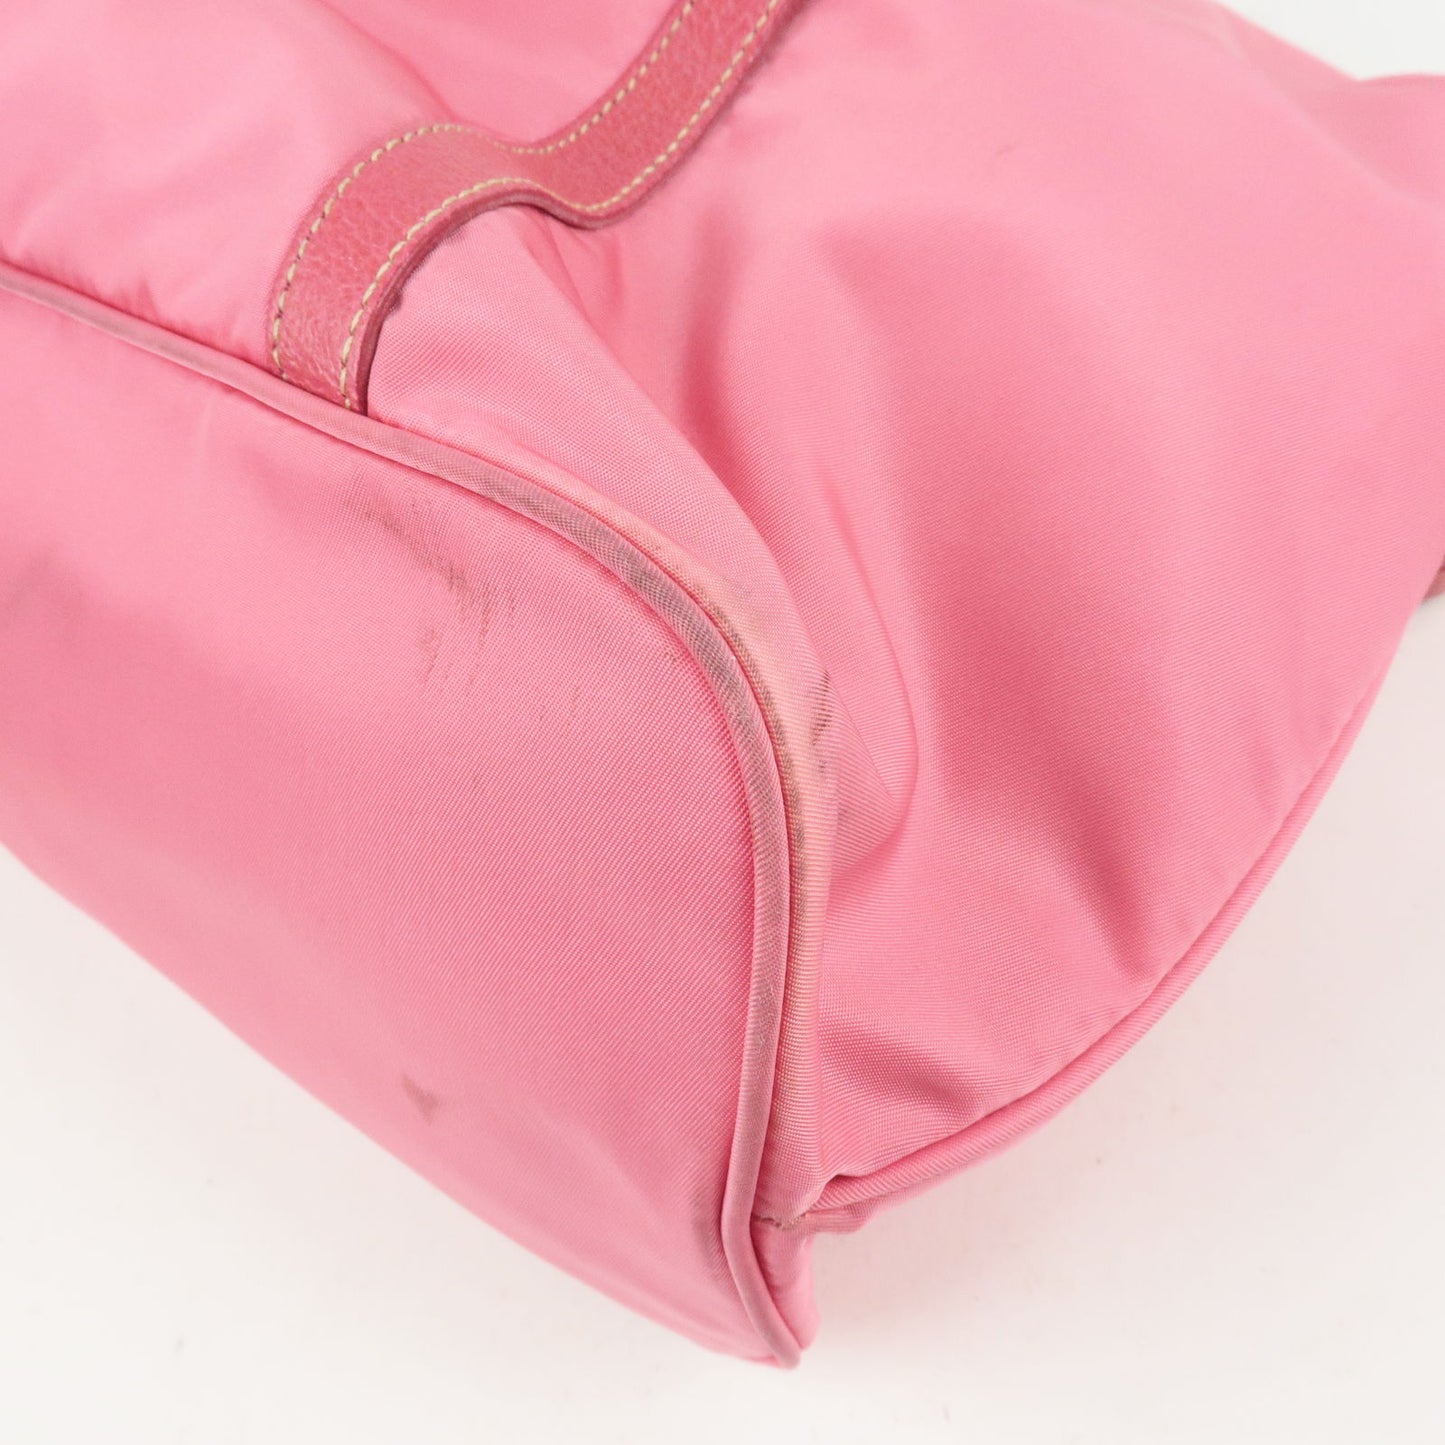 PRADA Logo Nylon Leather 2Way Bag Tote Bag Hand Bag Pink